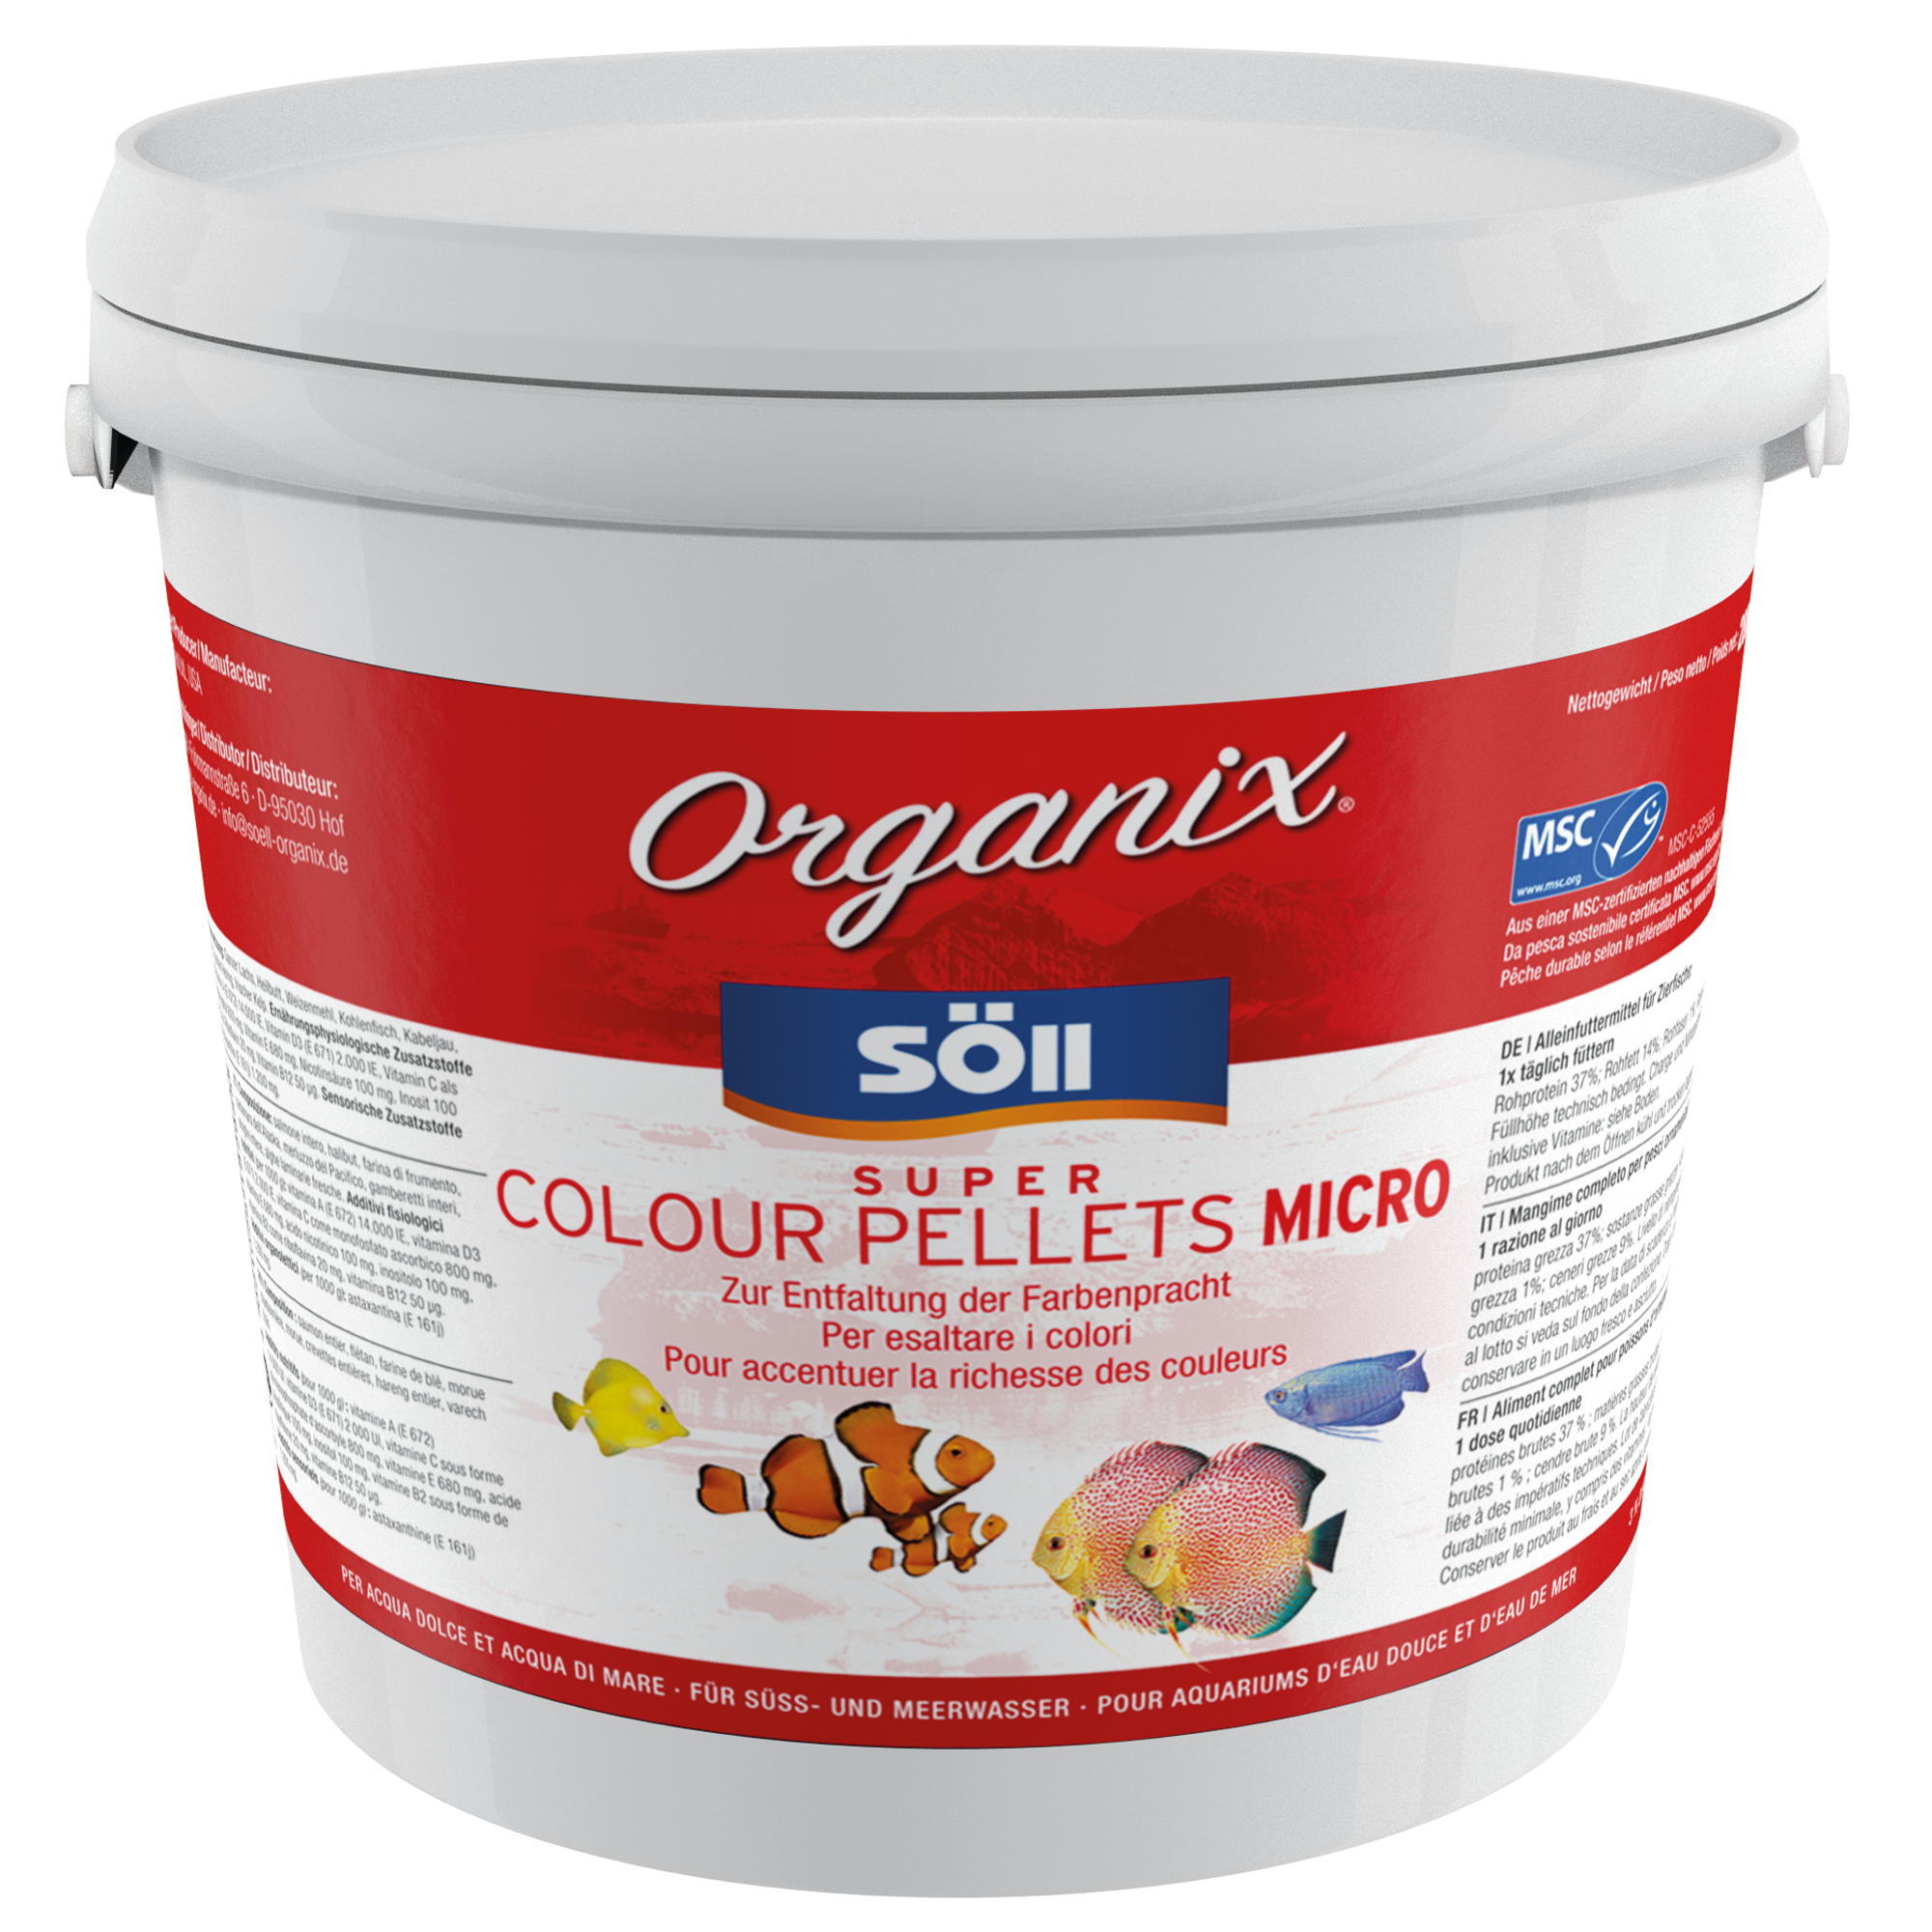 Organix Super Colour Pellets Micro 5 l + product picture